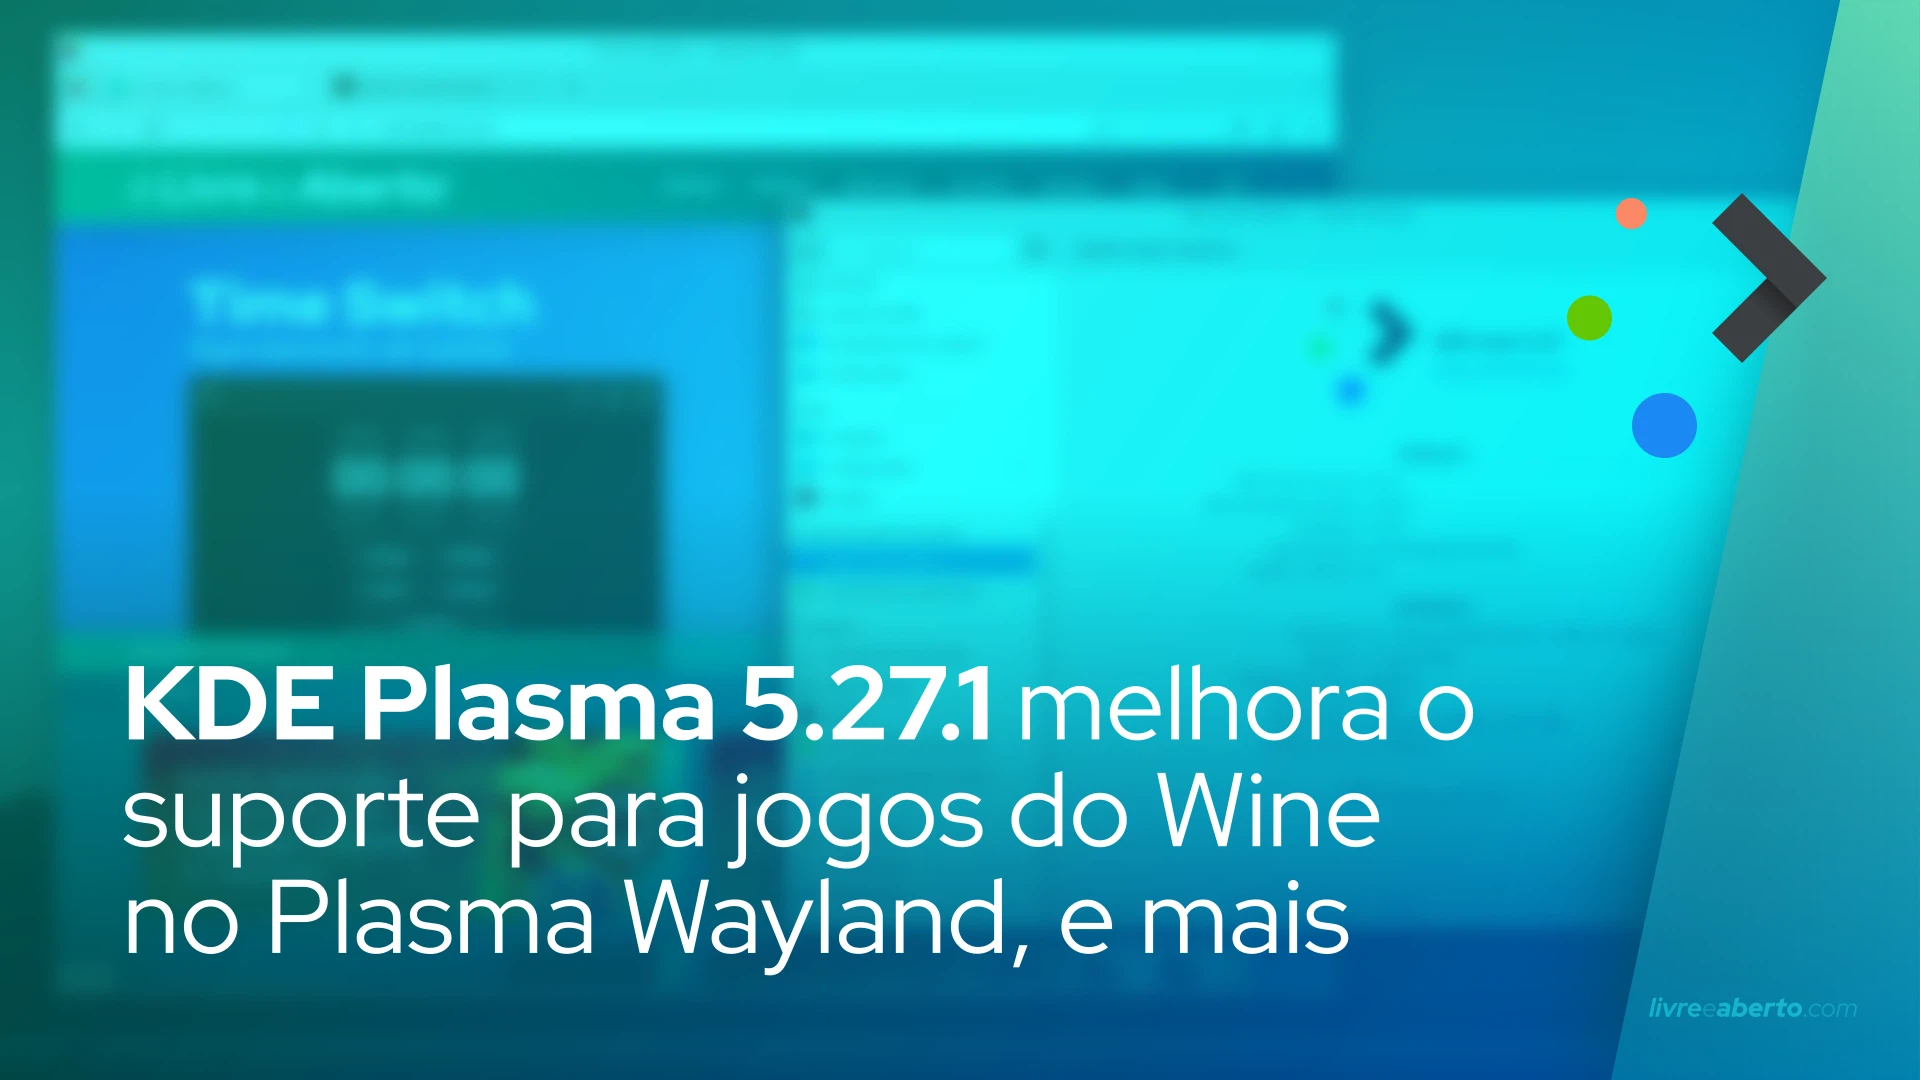 KDE Plasma 5.27.1 melhora o suporte para jogos do Wine no Plasma Wayland, corrige bugs